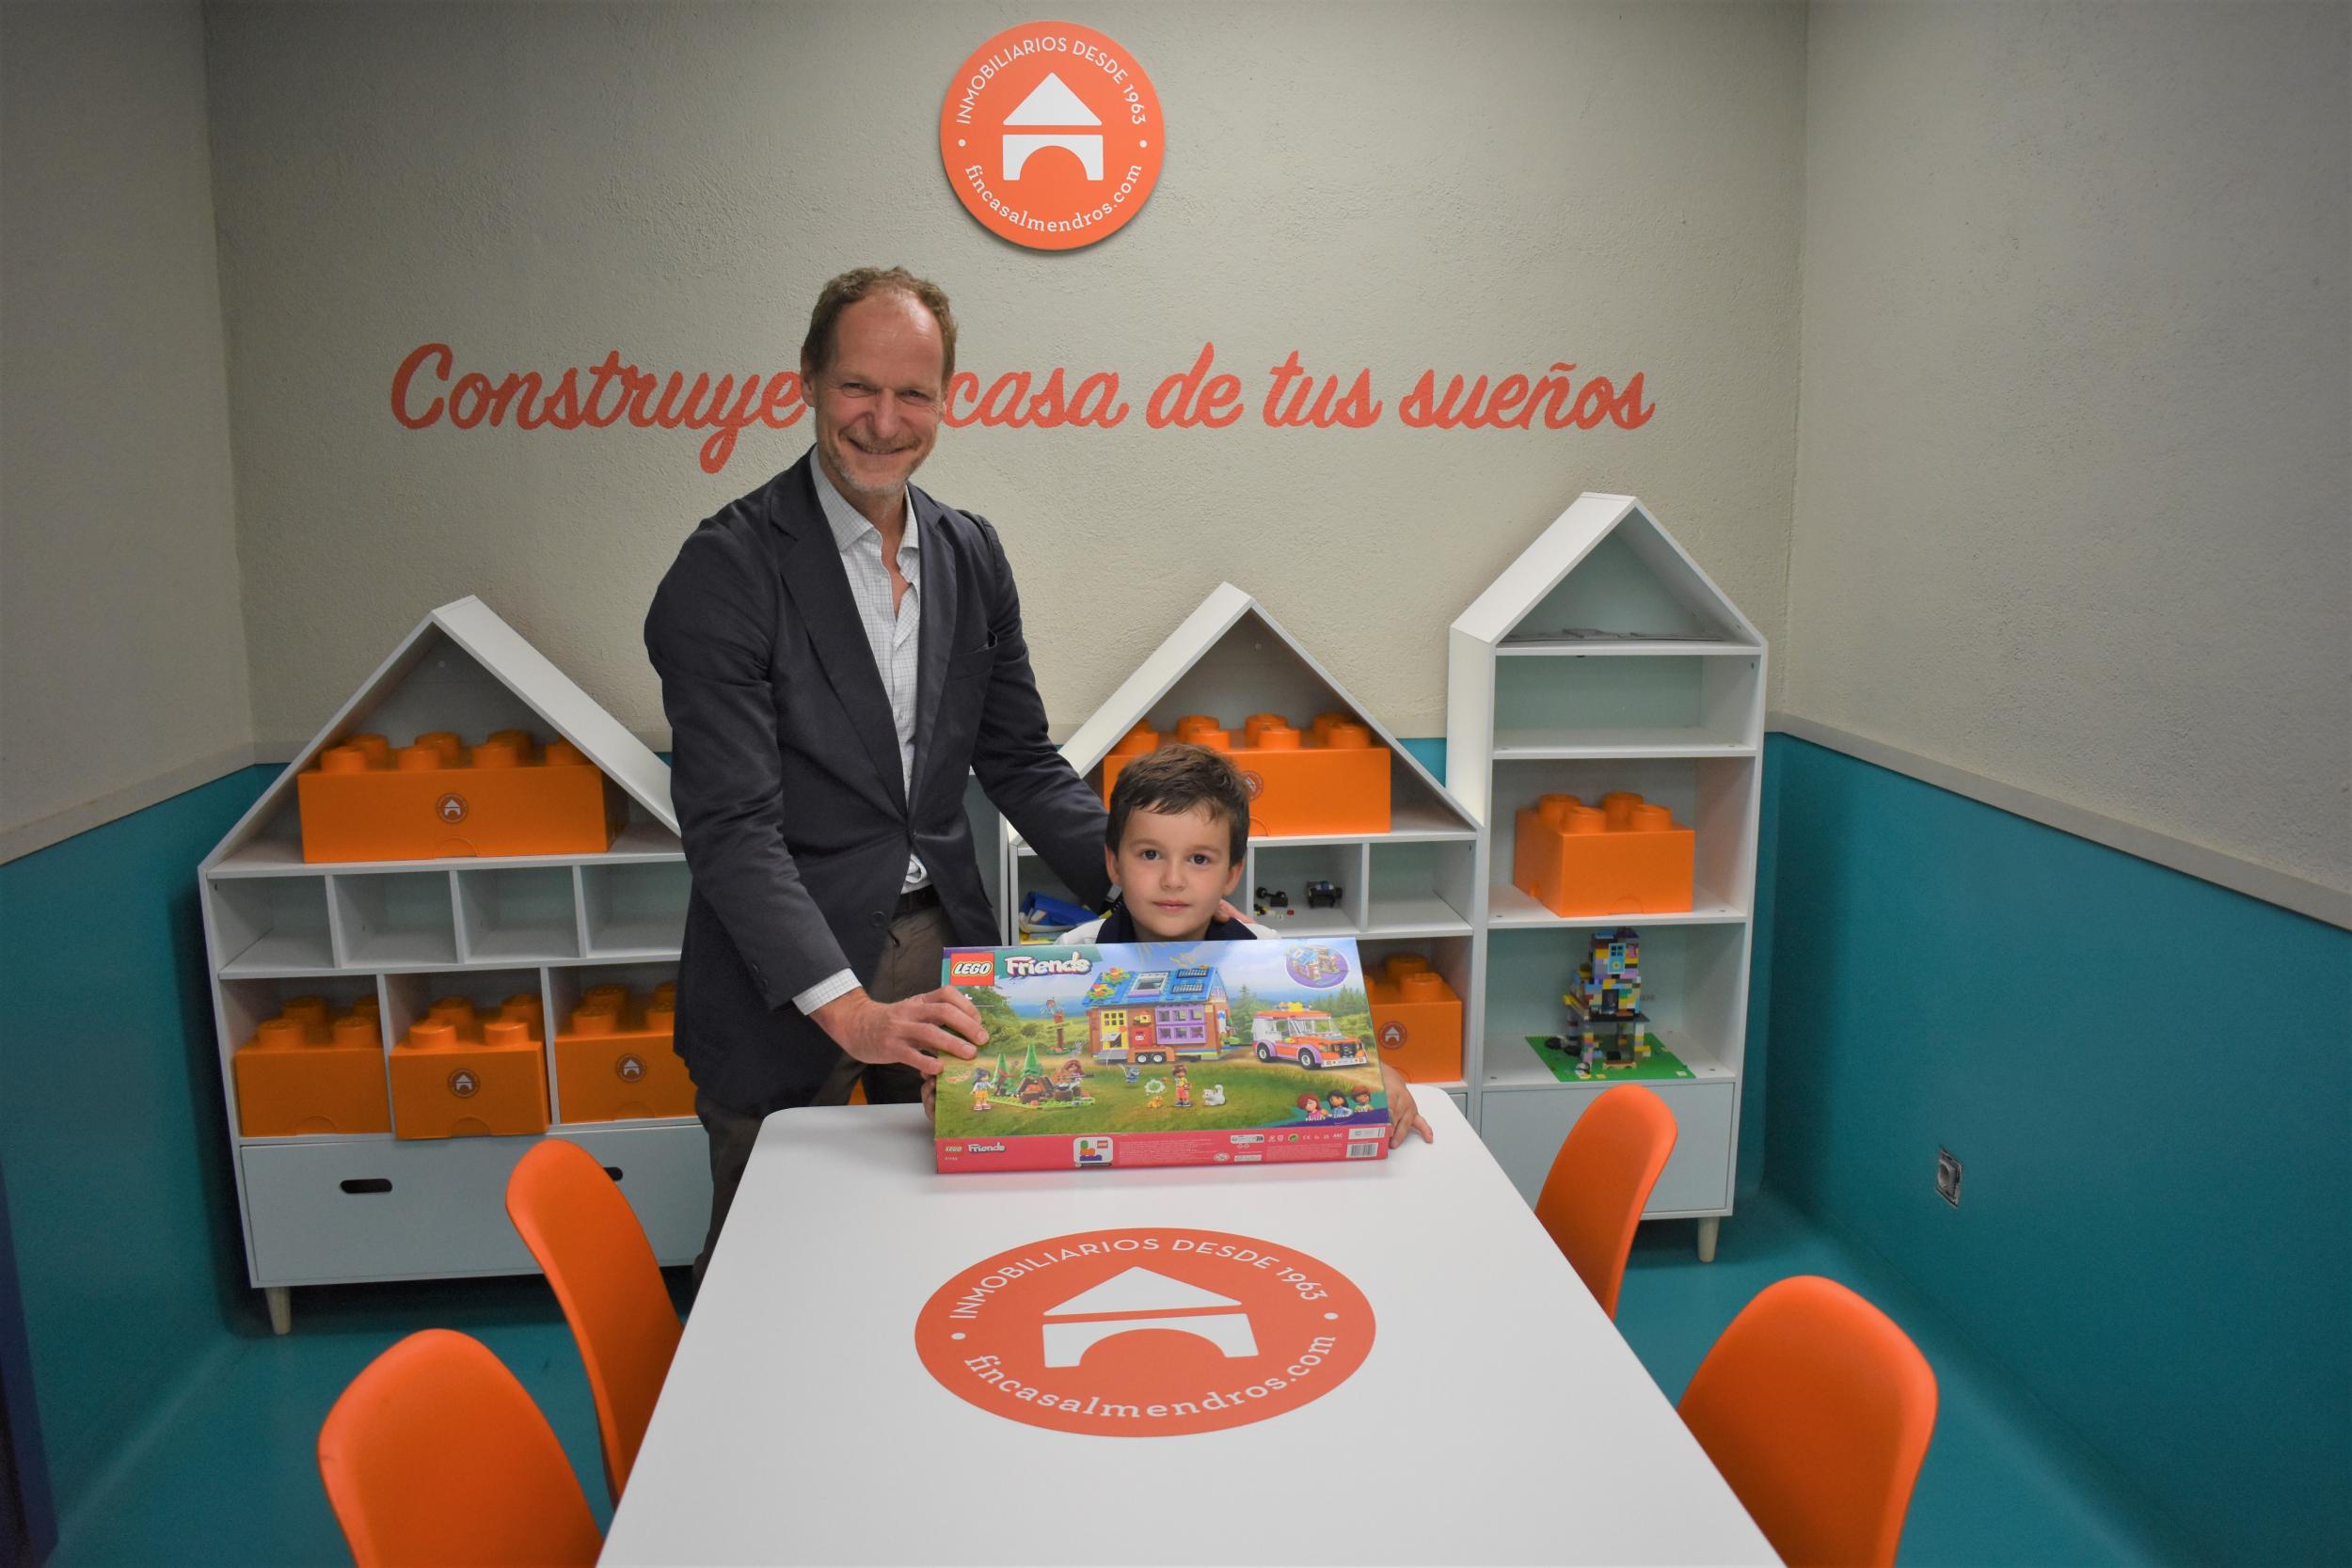 Alex Mailan recibe el premio como ganador del segundo concurso "Construye la casa de tus sueños by Almendros"